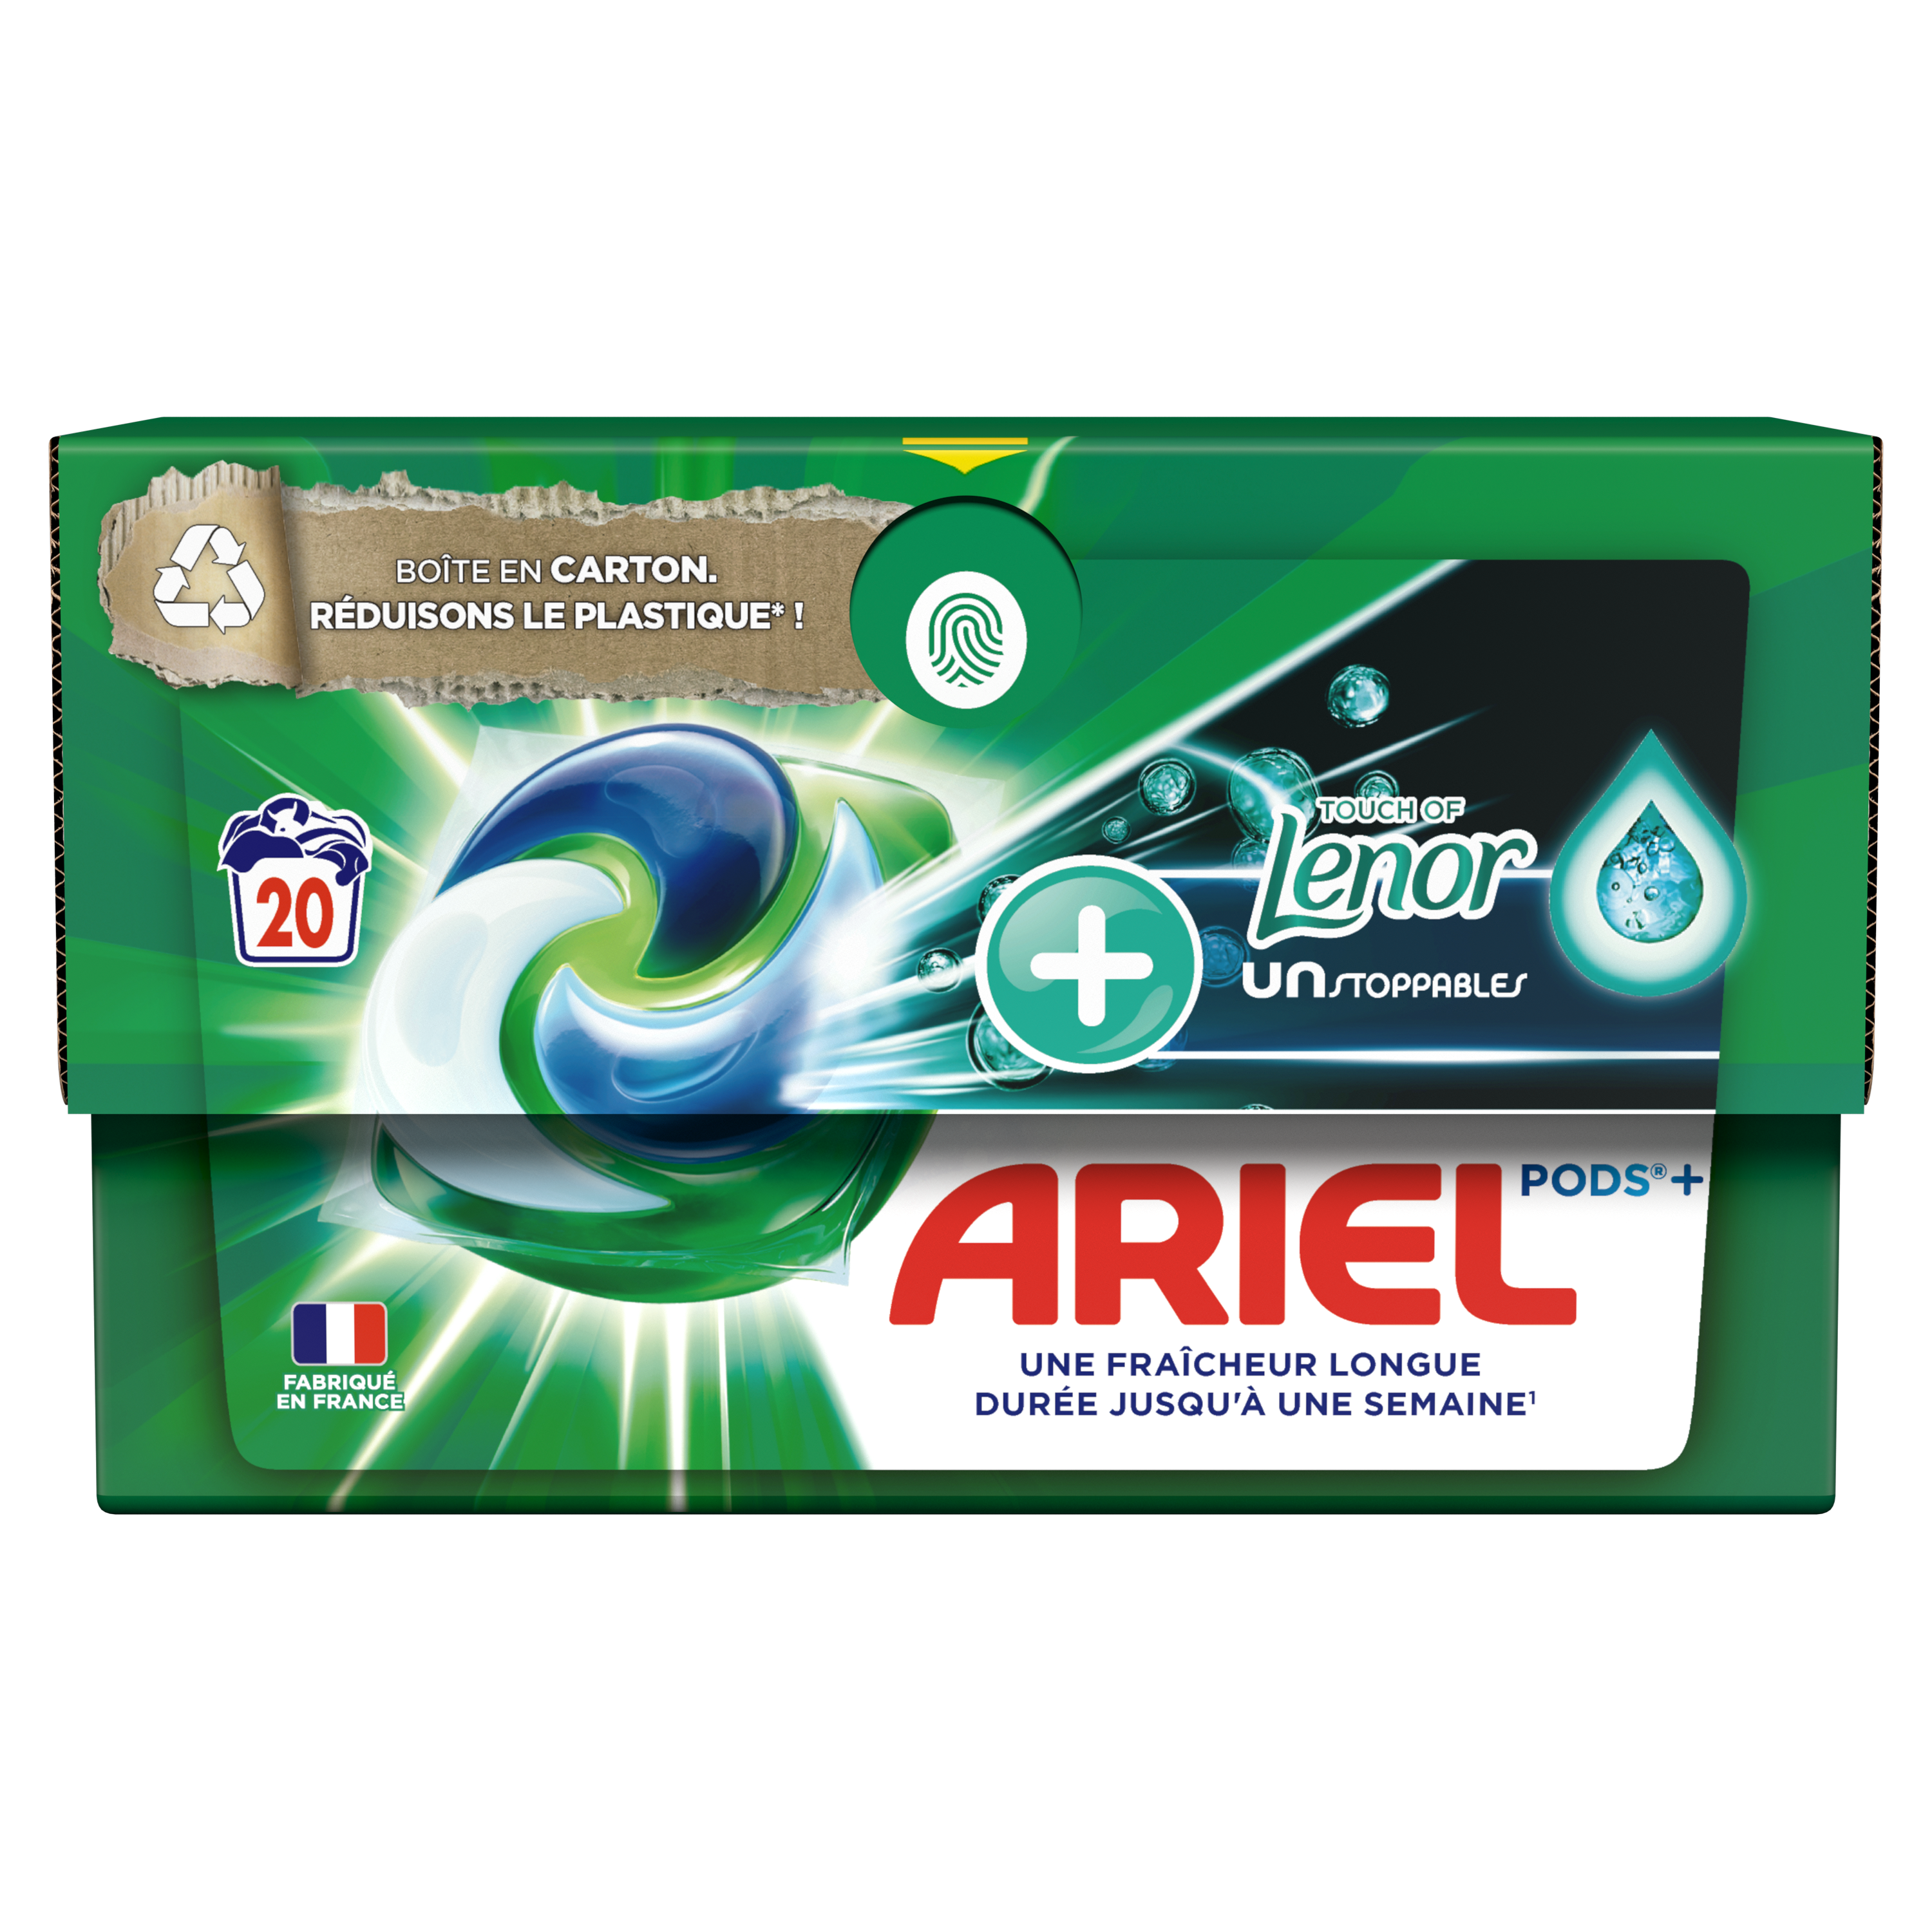 Ariel Pods+ - Lessive Liq Caps - +Unst Touche de Lenor - Couleur